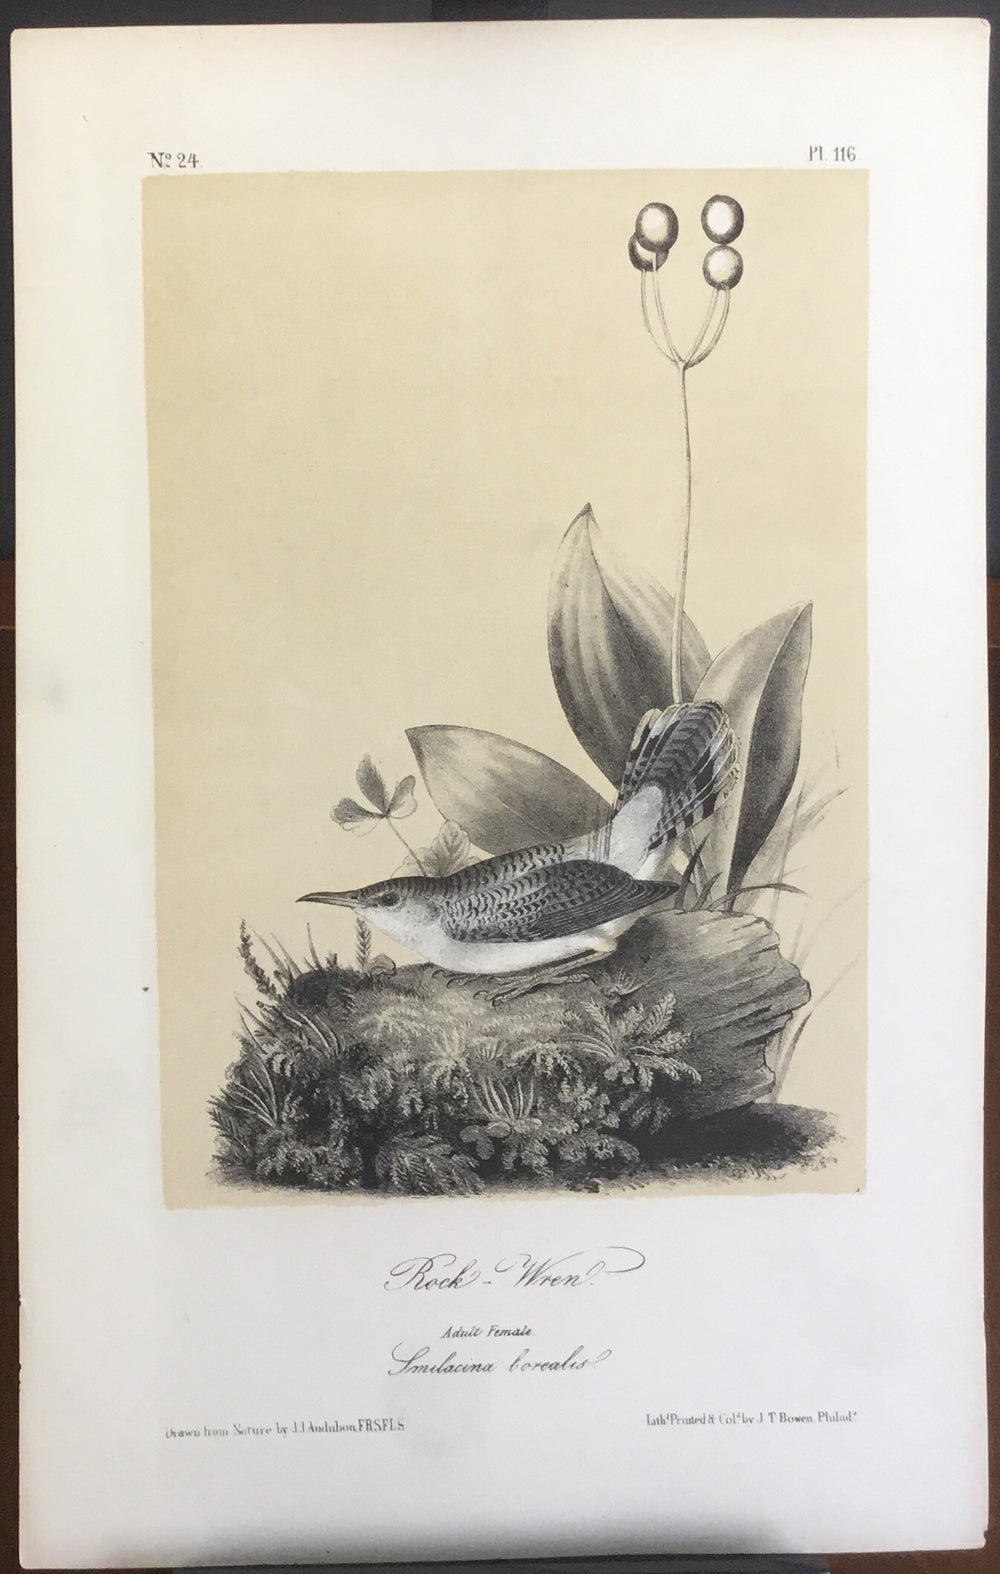 Audubon Octavo Rock Wren, plate 116 (2), uncolored test sheet, 7 x 11